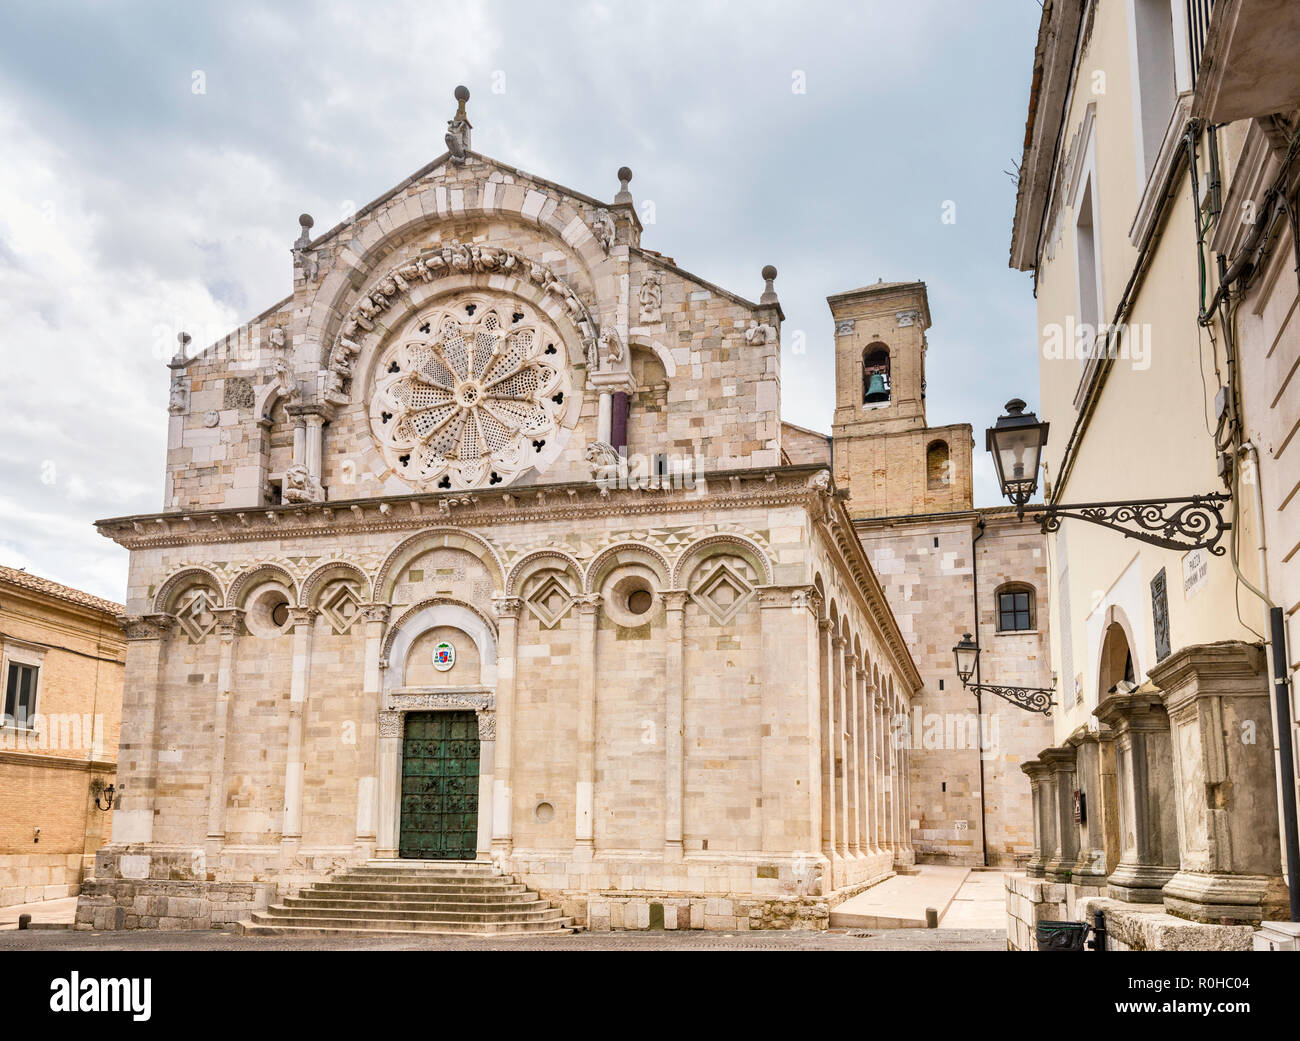 Cattedrale di Troia, Romanesque style, in Troia, Apulia, Italy Stock Photo